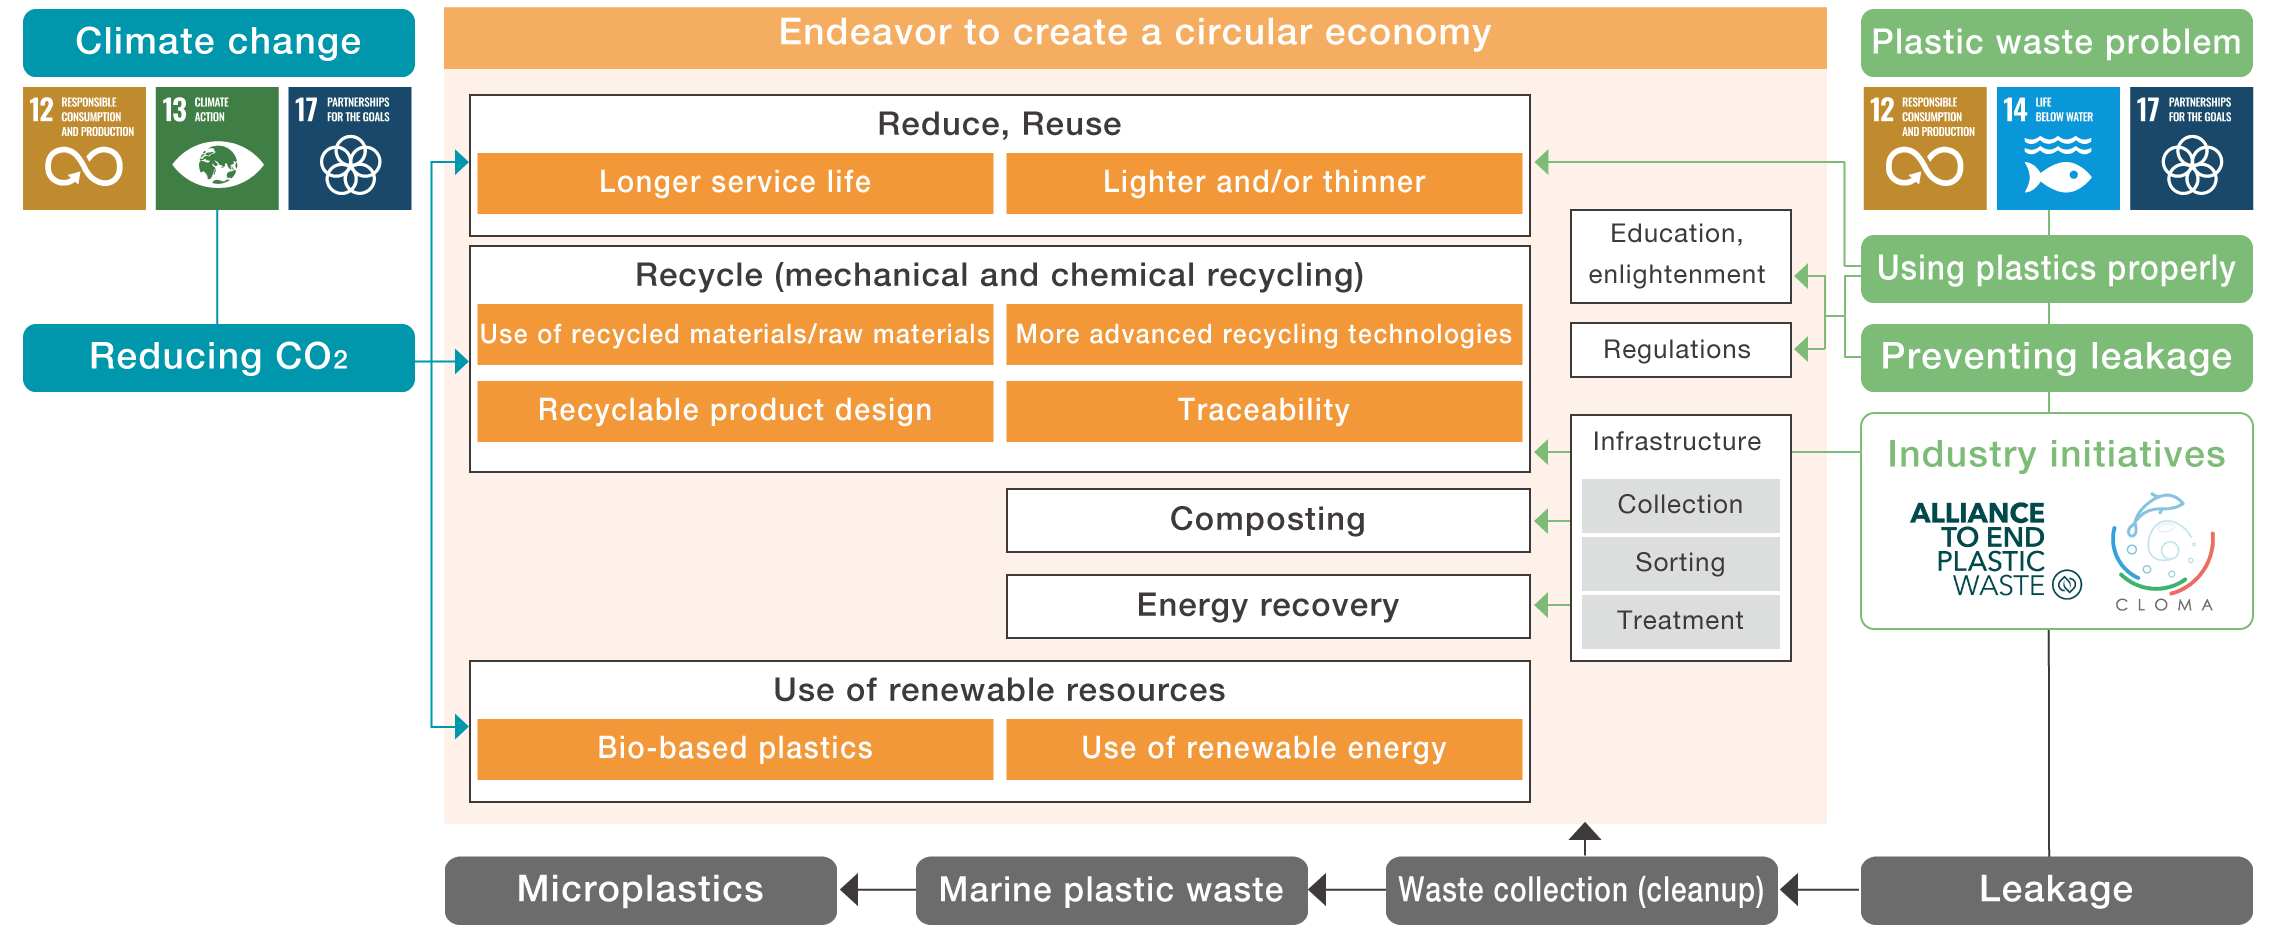 Endeavor to create a circular economy